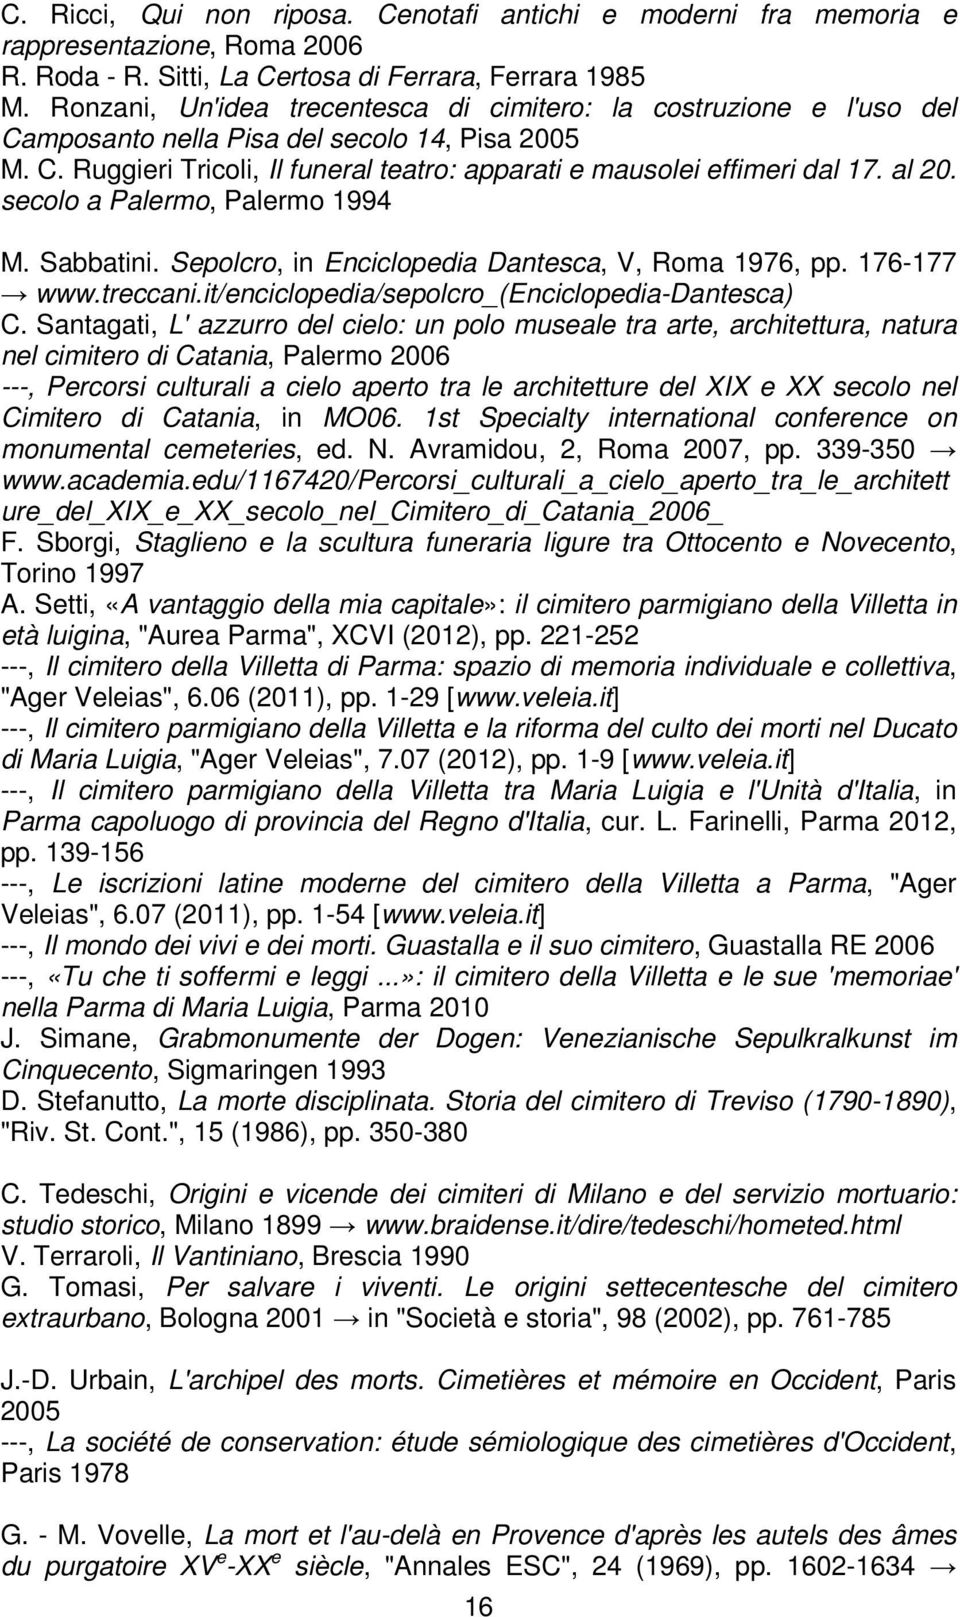 al 20. secolo a Palermo, Palermo 1994 M. Sabbatini. Sepolcro, in Enciclopedia Dantesca, V, Roma 1976, pp. 176-177 www.treccani.it/enciclopedia/sepolcro_(enciclopedia-dantesca) C.